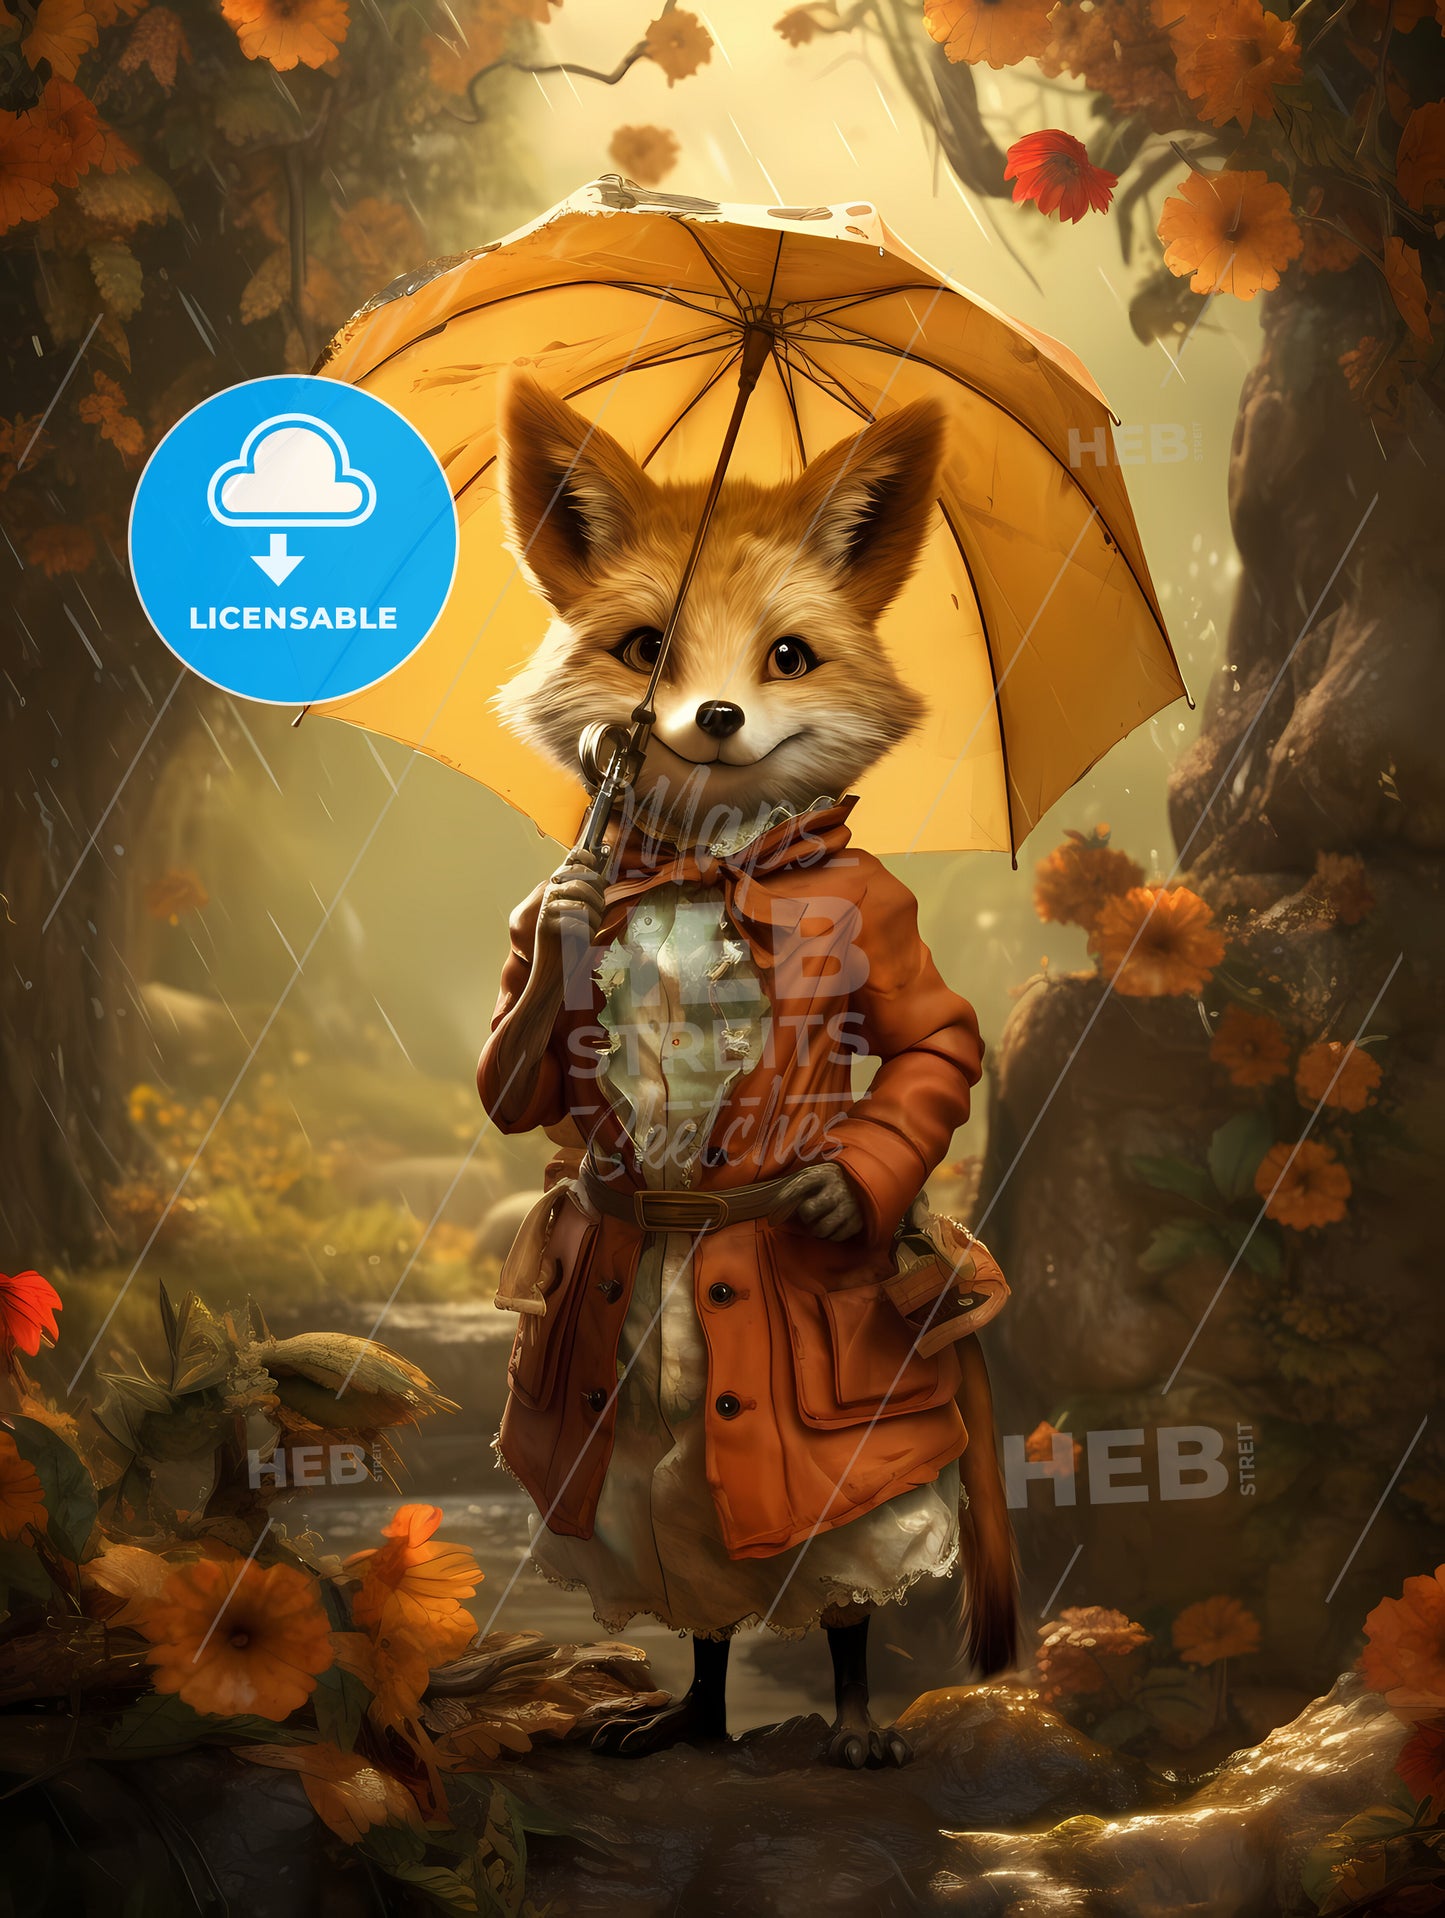 A Cartoon Of A Fox Holding An Umbrella